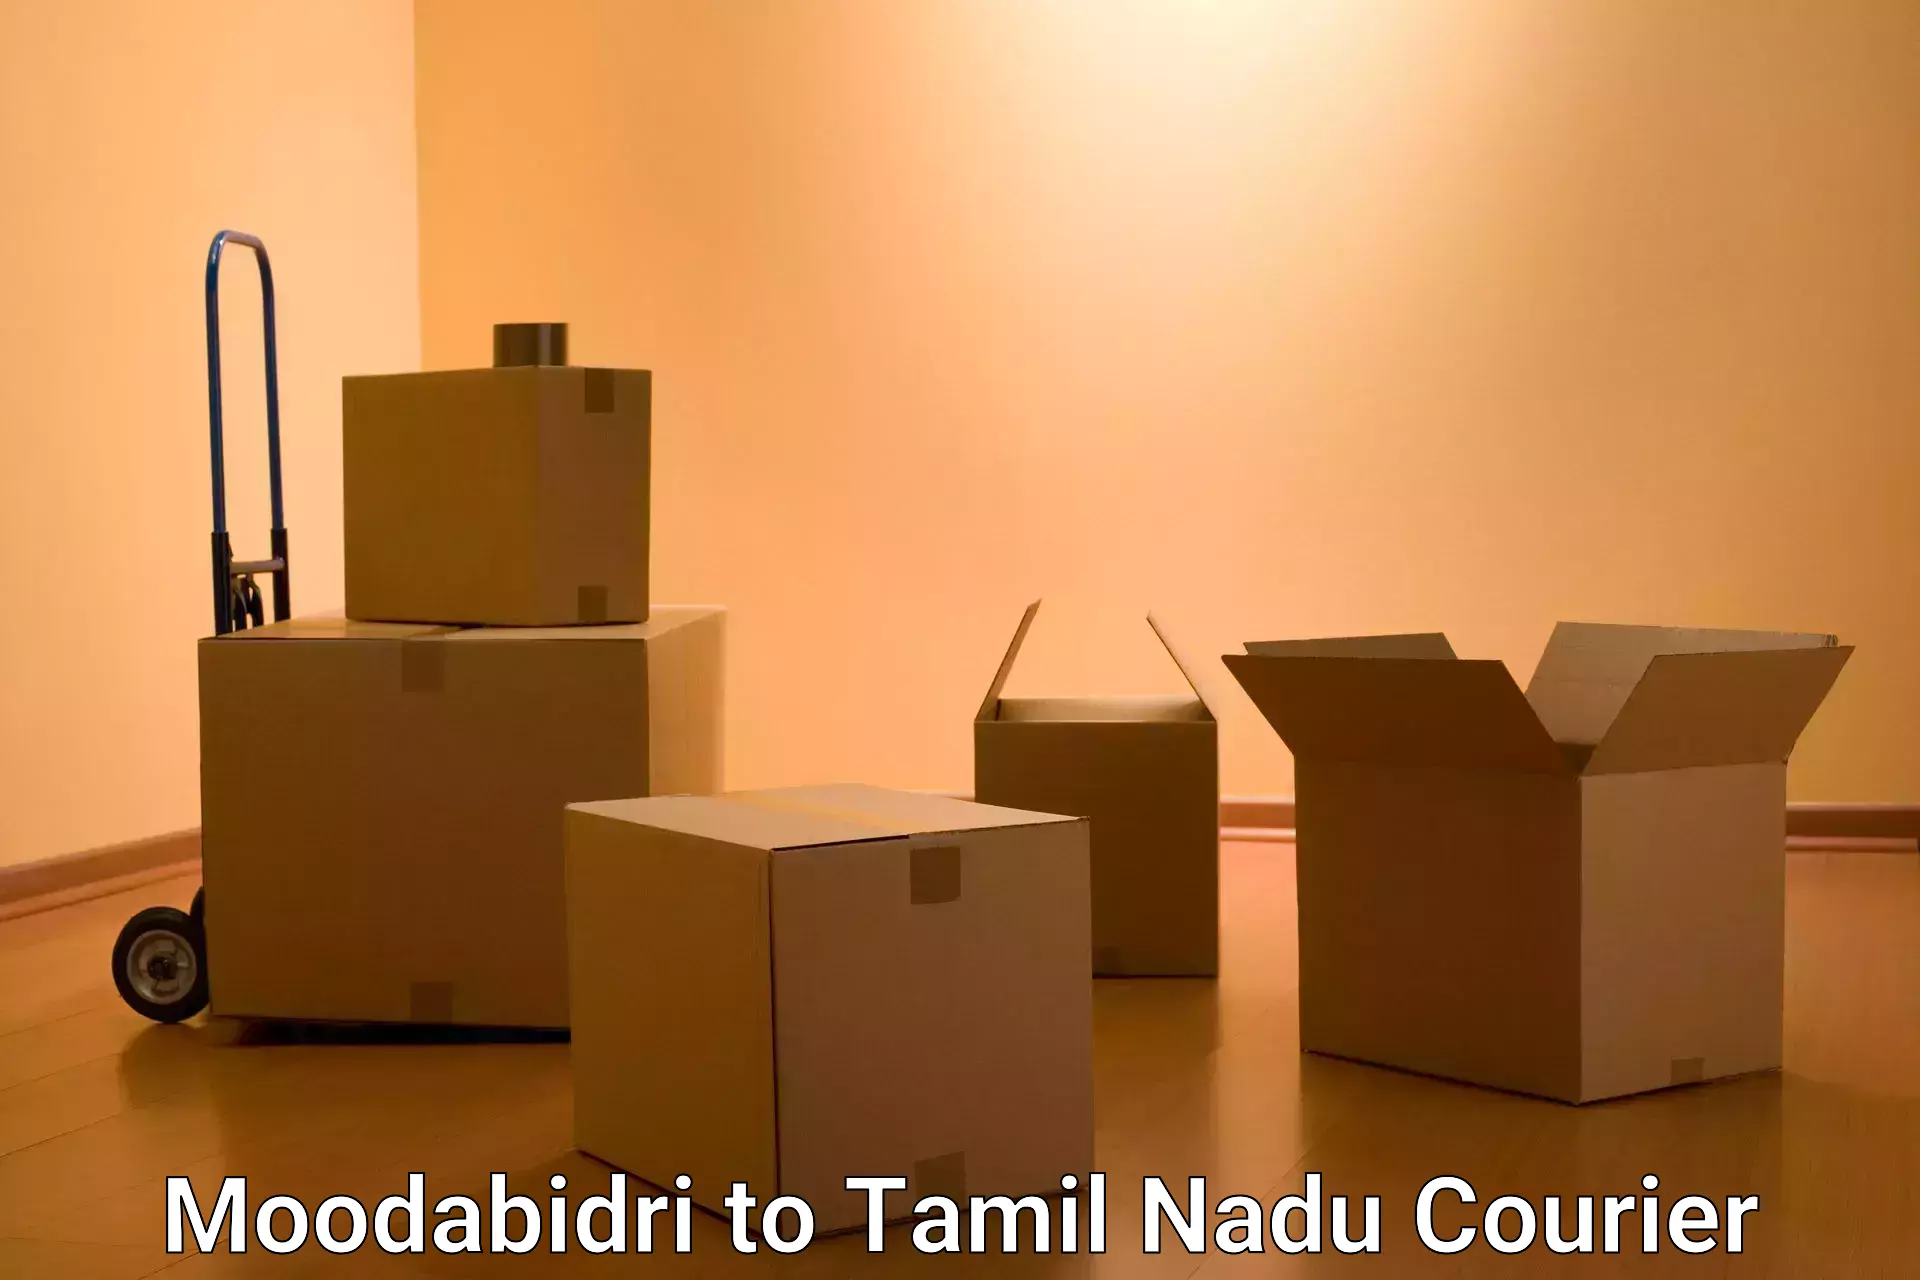 Small business couriers Moodabidri to Kulithalai